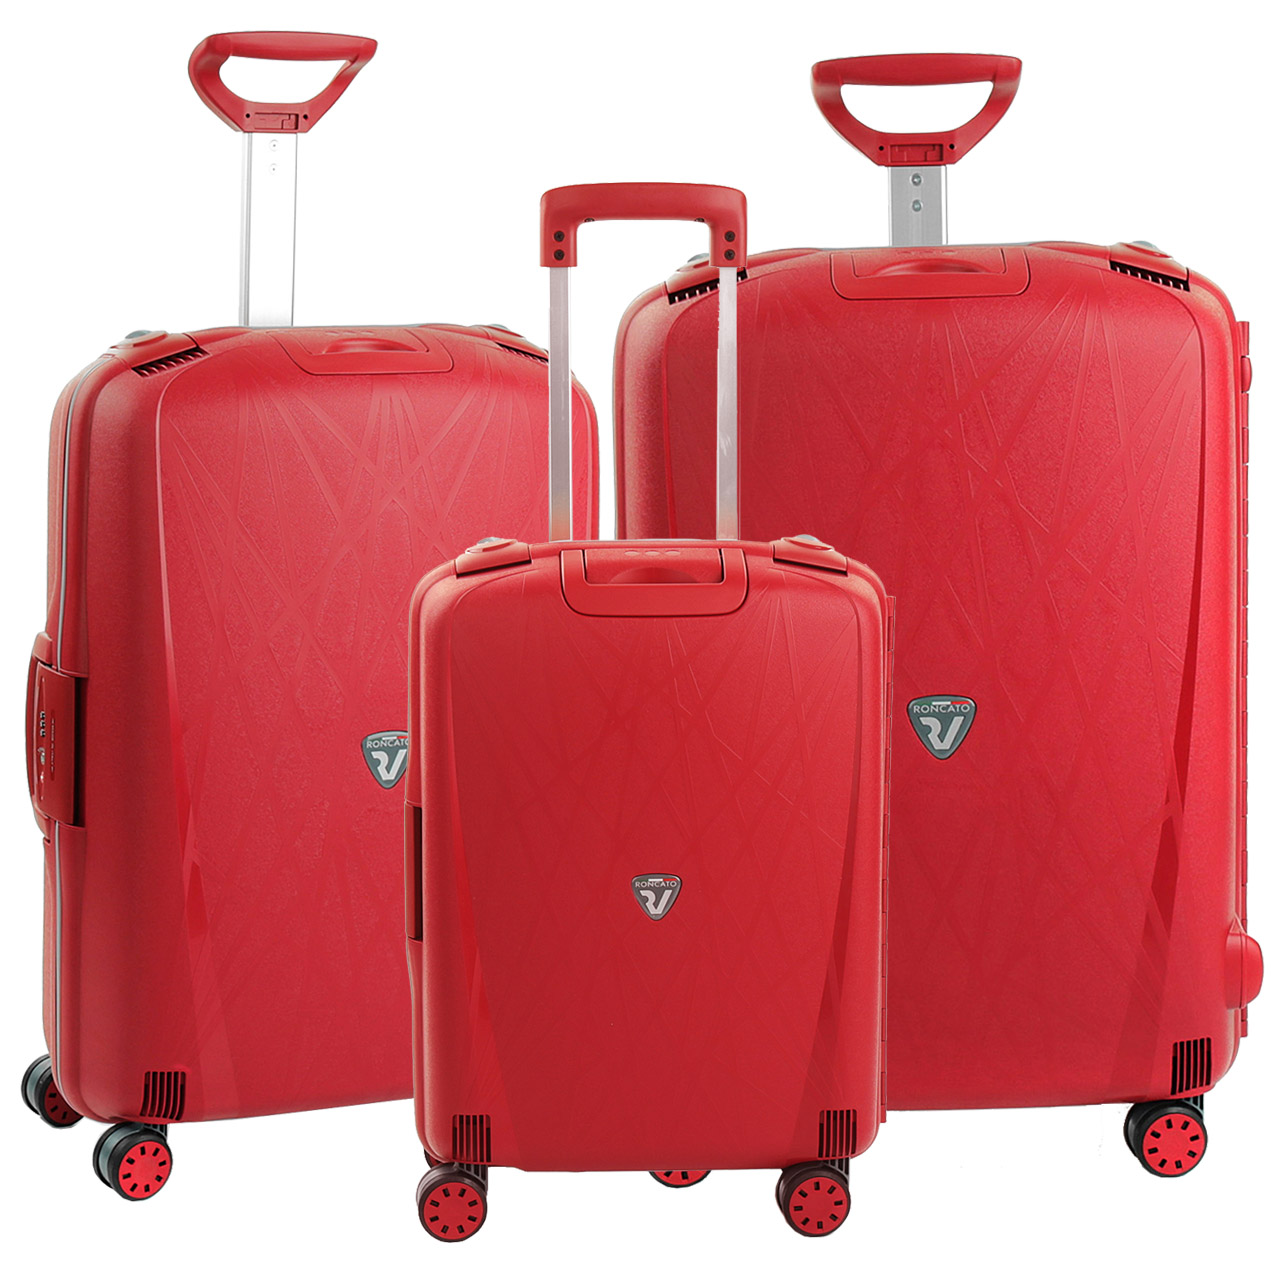 نکته خرید - قیمت روز مجموعه سه عددی چمدان رونکاتو مدل L 500711 خرید